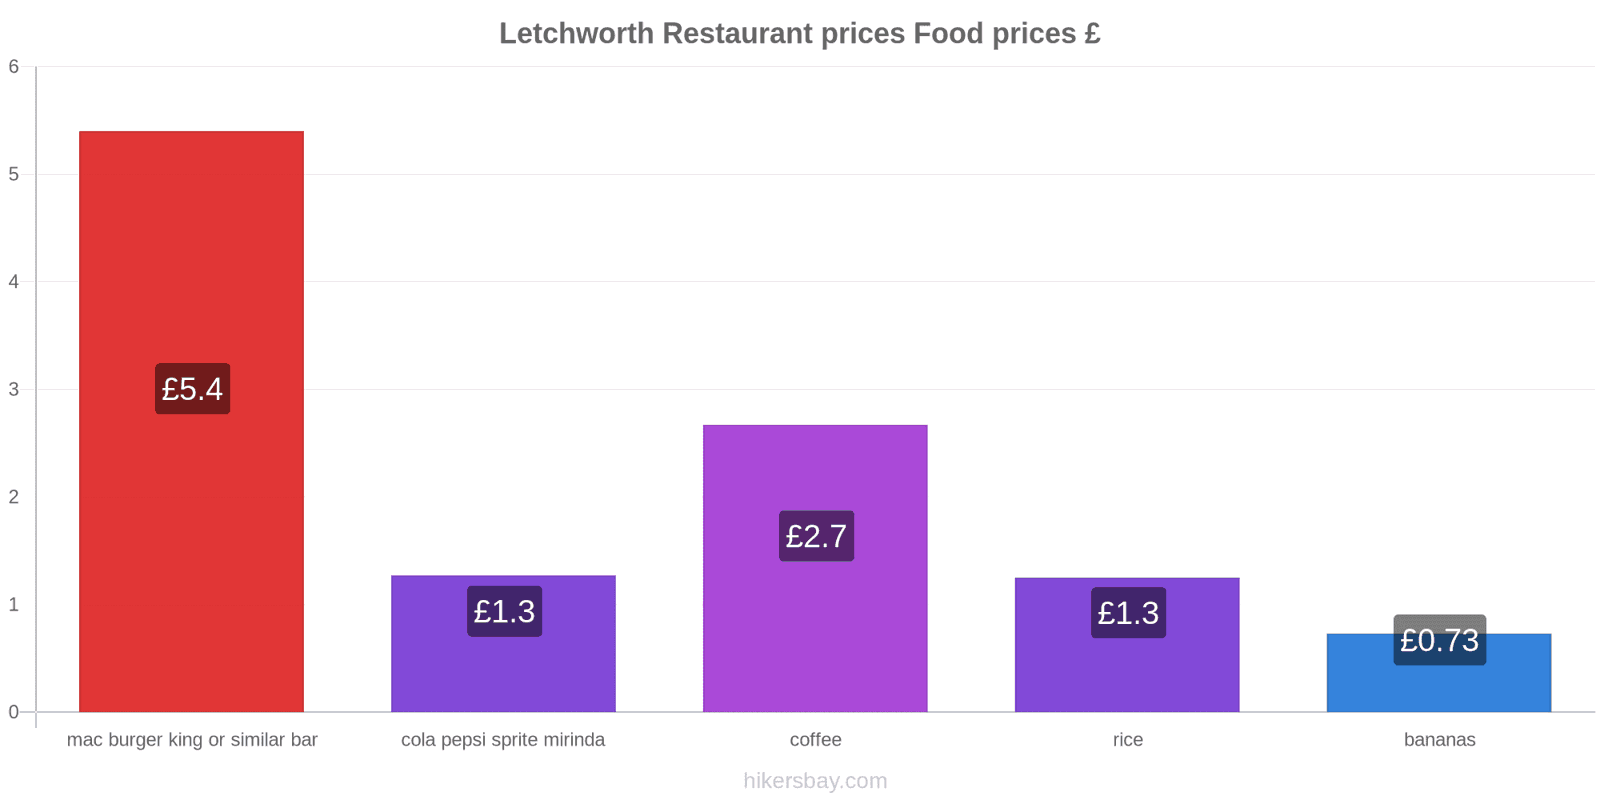 Letchworth price changes hikersbay.com